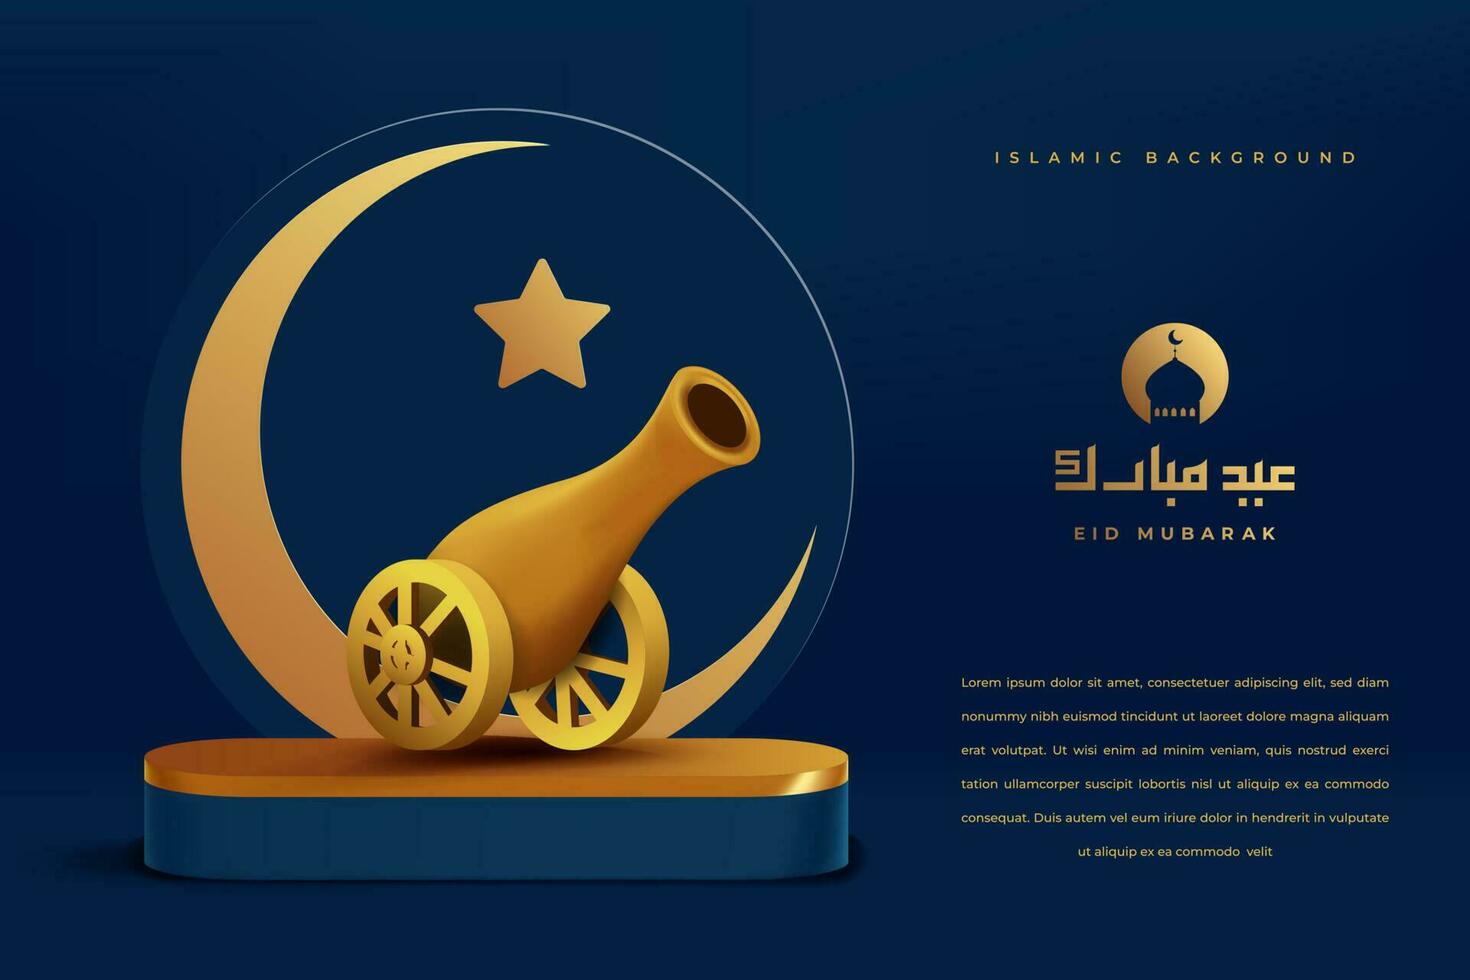 IED mubarok visa podium dekoration bakgrund med islamic prydnad. vektor 3d illustration